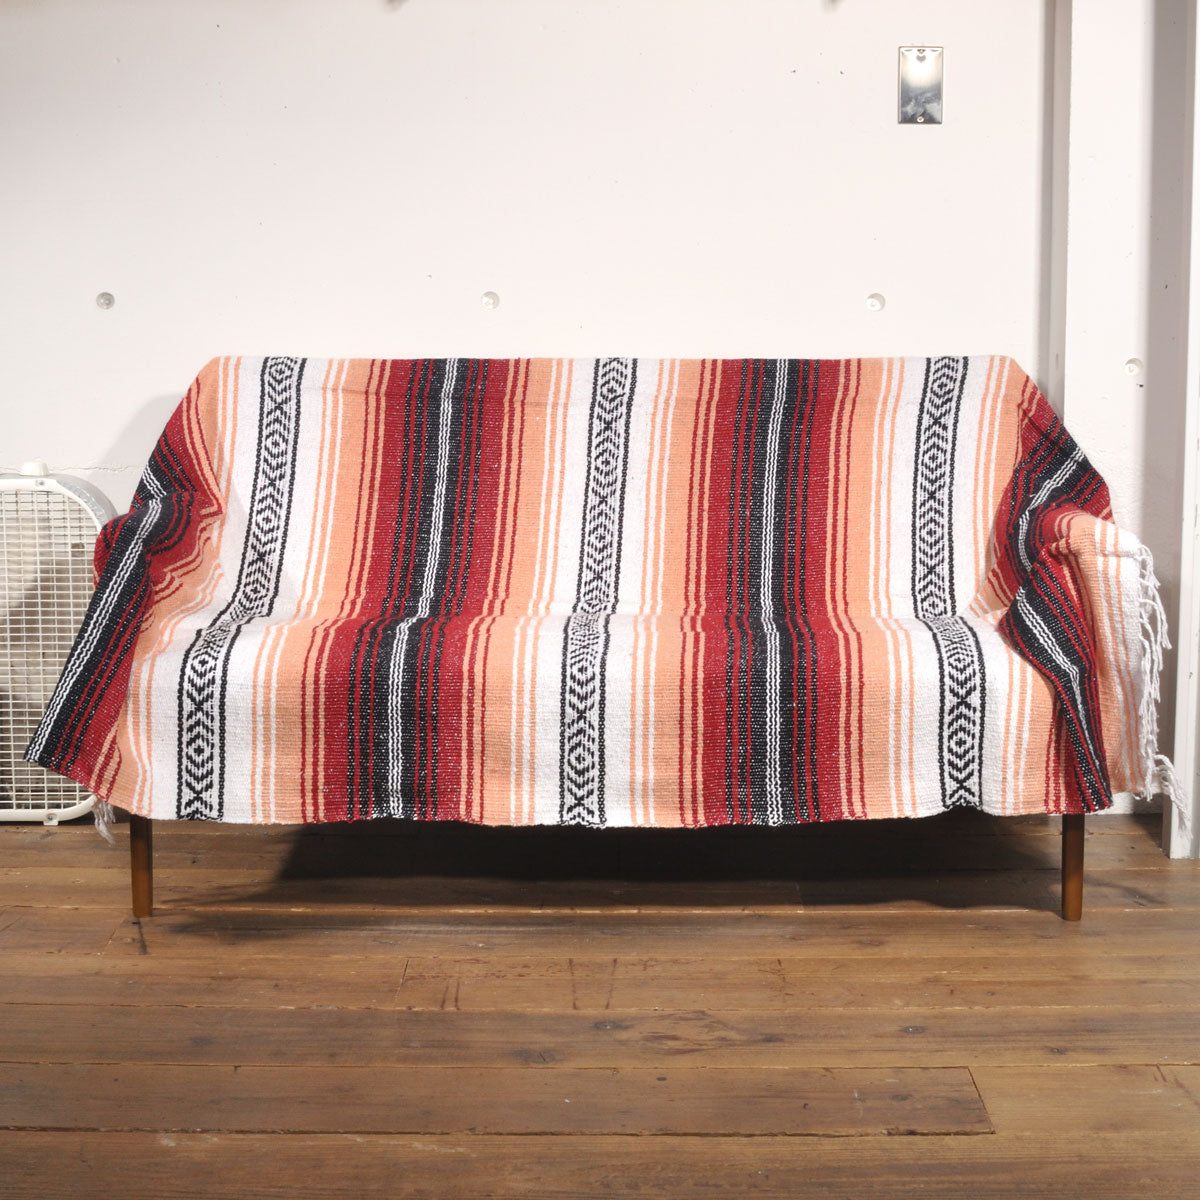 ラグフォレスト(Rug Forest)スタンダードファルサ メキシカンブランケット Standard Falsa Mexican Blanket[約185×135cm]RED/PEACH